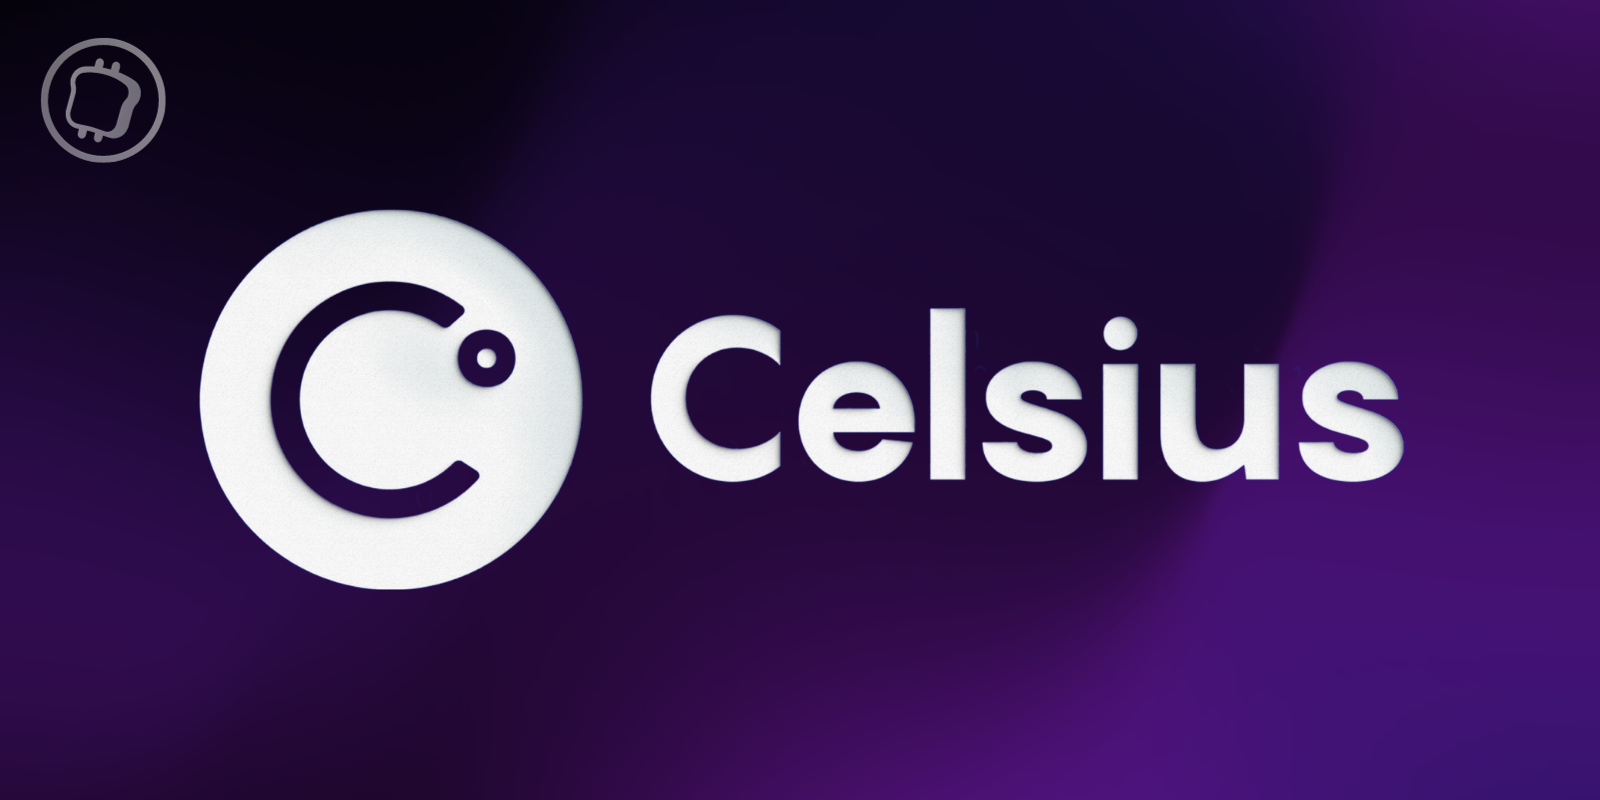 Celsius s'apprête à unstake 464 millions de dollars d'ETH, va-t-elle les vendre ?